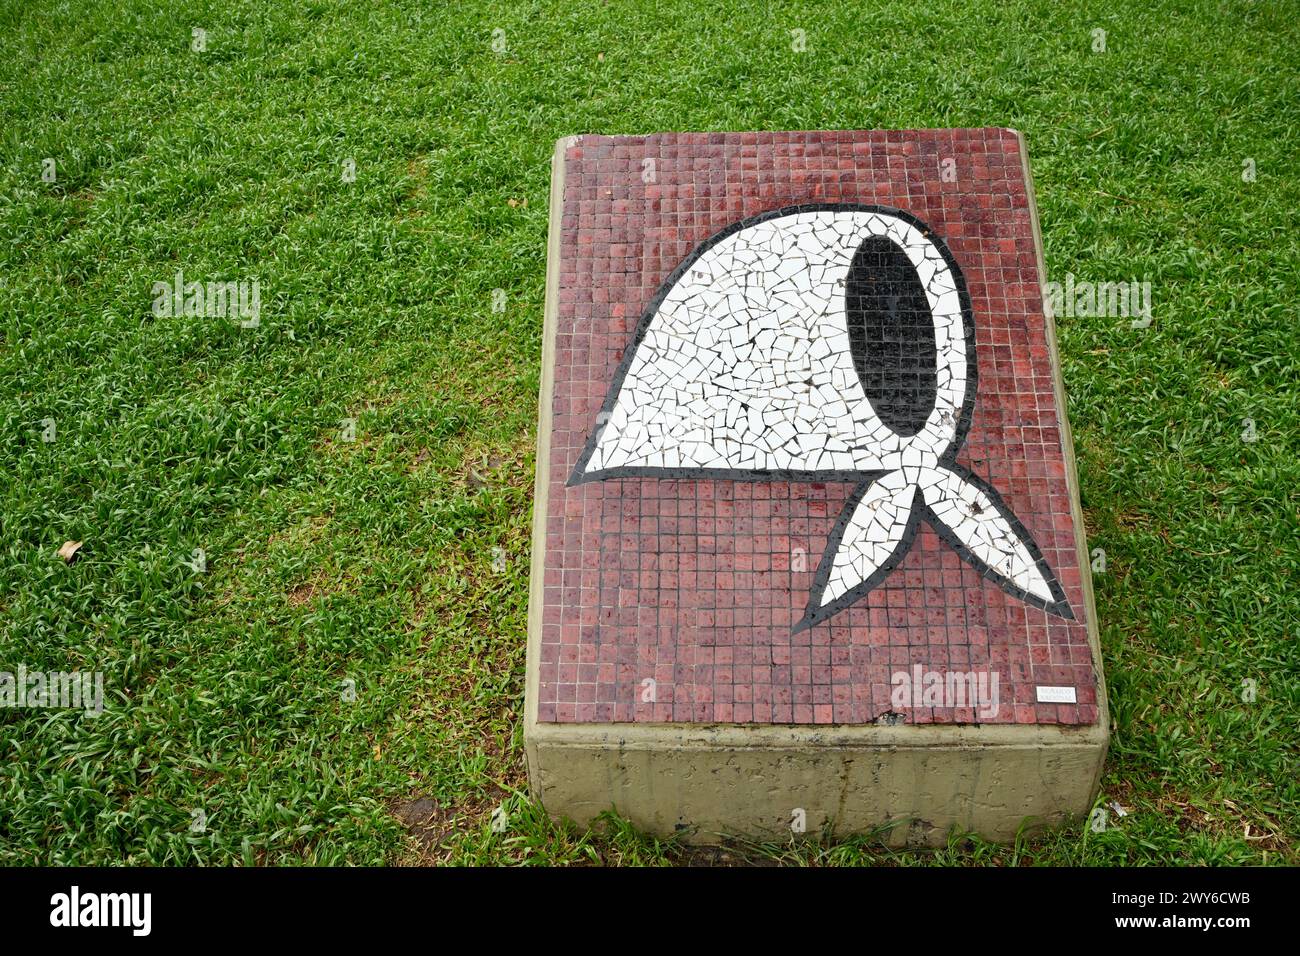 Gekacheltes Mosaik Weißes Kopftuch Symbol der Mütter der Plaza de Mayo Bewegung für ihre verlorenen Kinder während der Militärdiktatur. Stockfoto